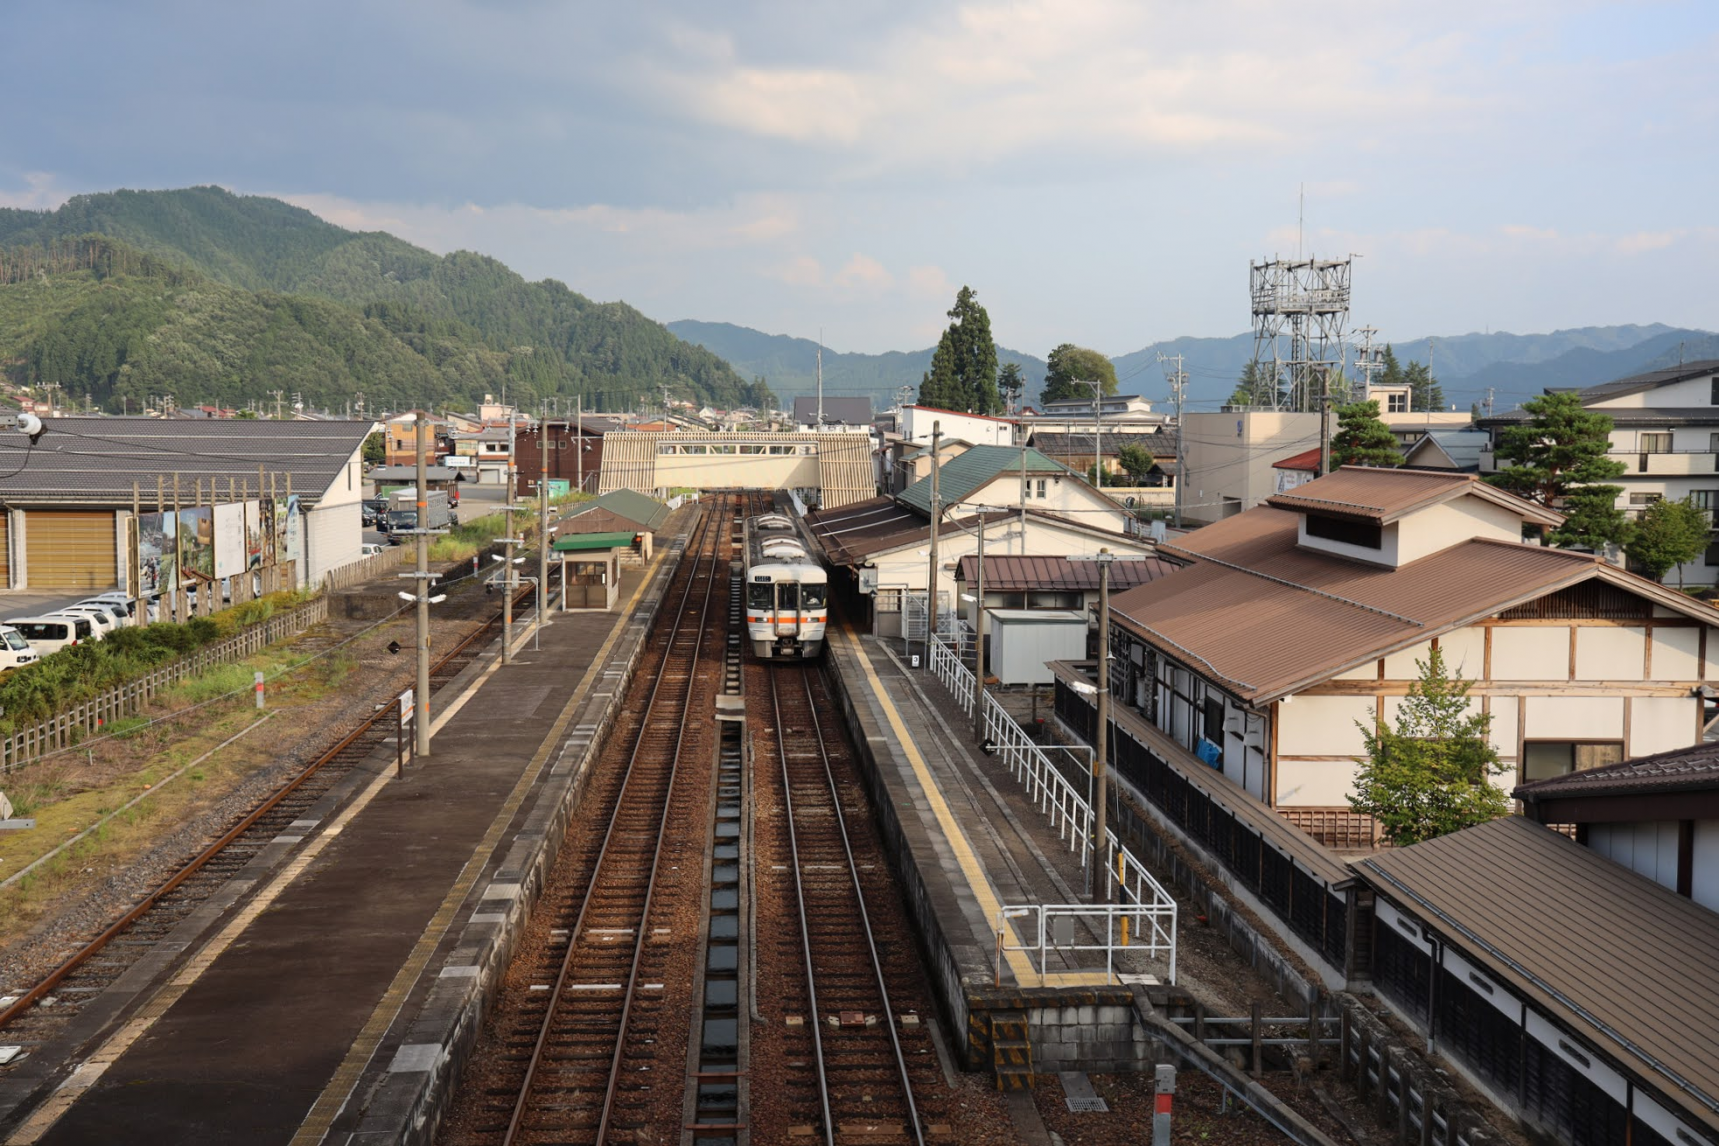 1. Hida-Furukawa Station